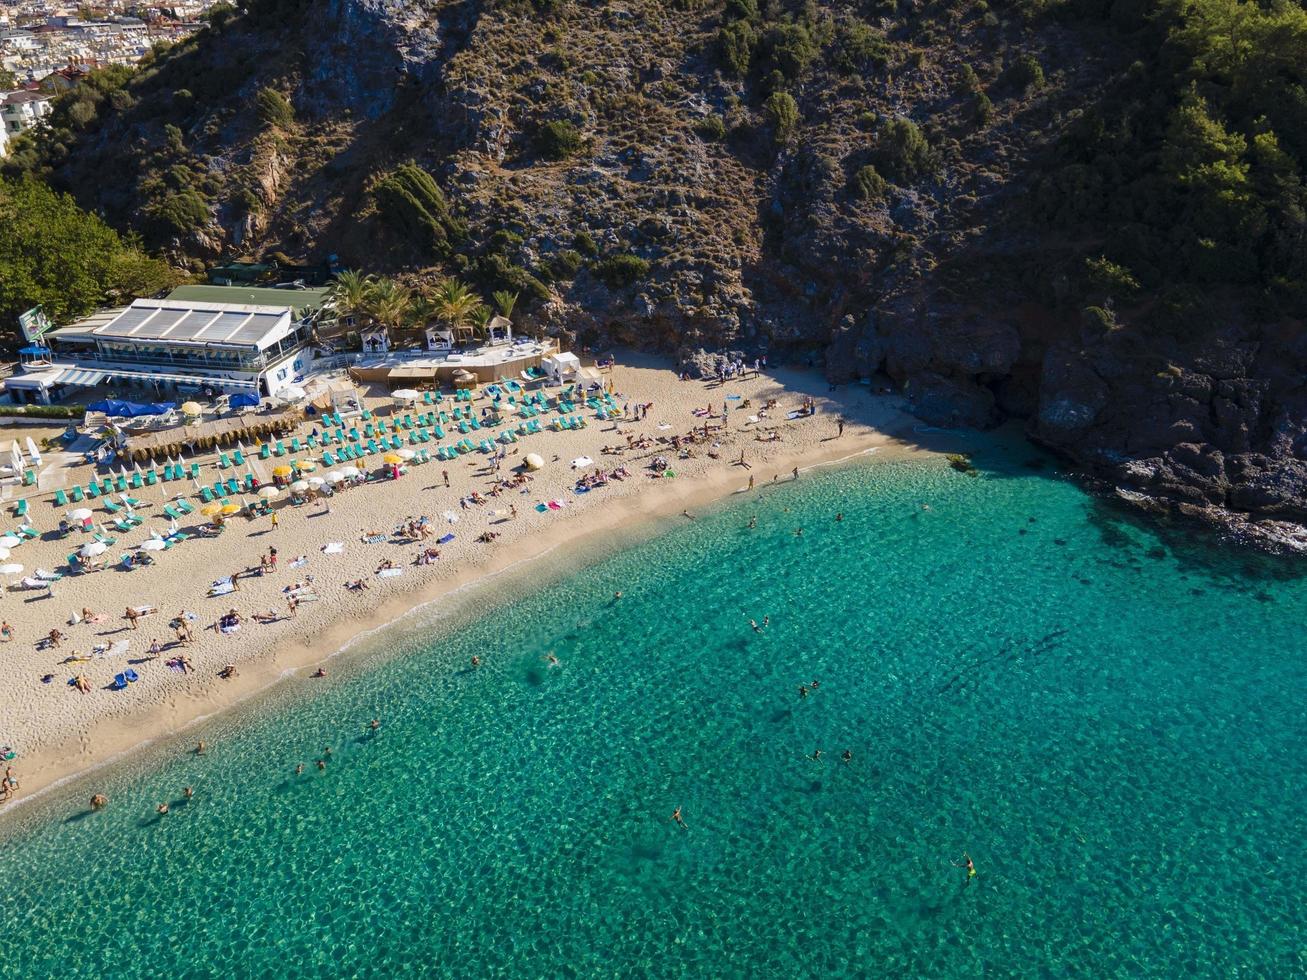 la mundialmente famosa playa de alanya cleopatra. foto aerea de la playa. increíbles vacaciones de verano